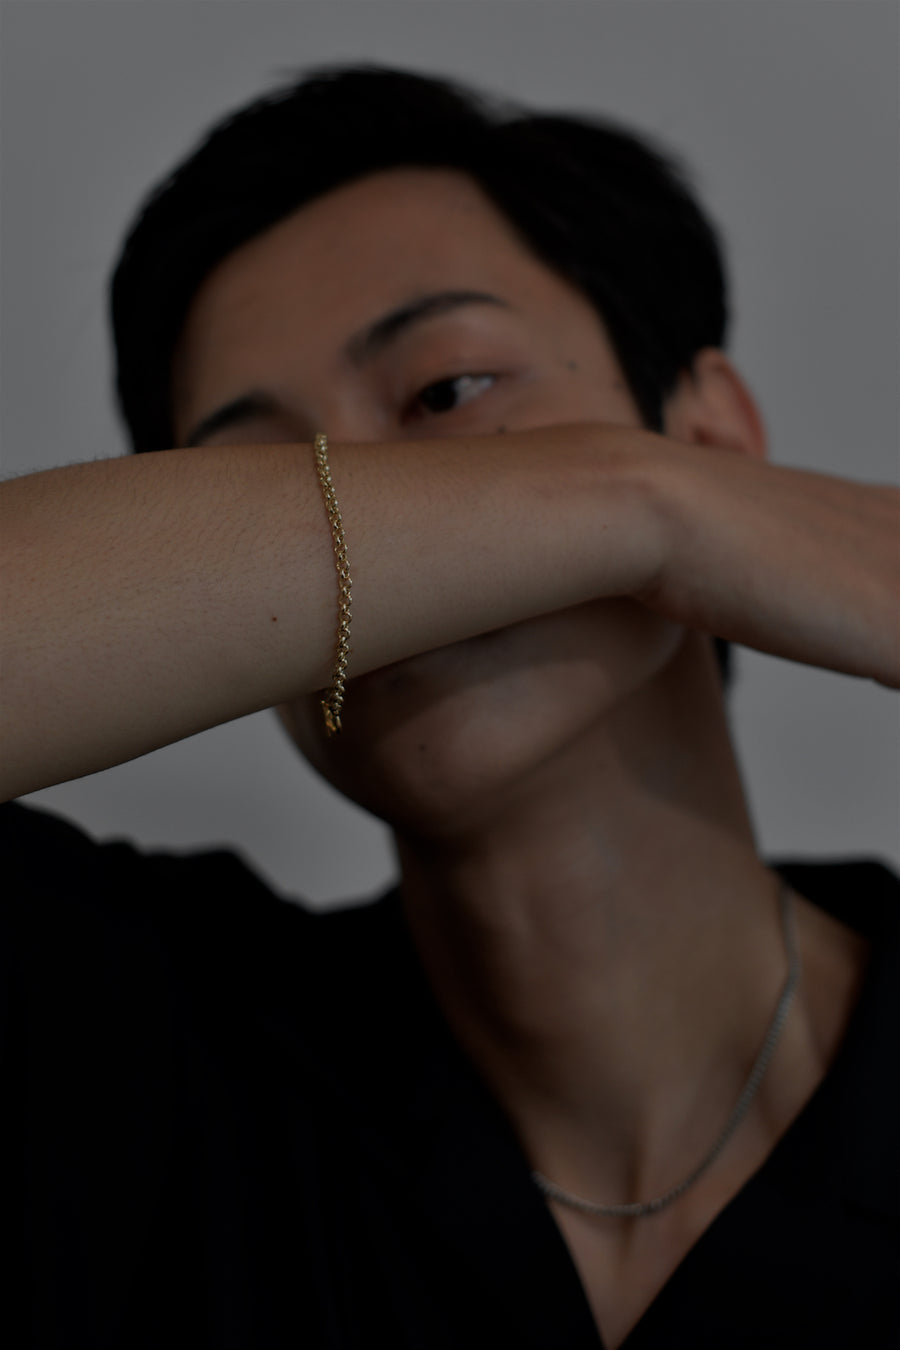 "Genderless" Chain bracelet Gold